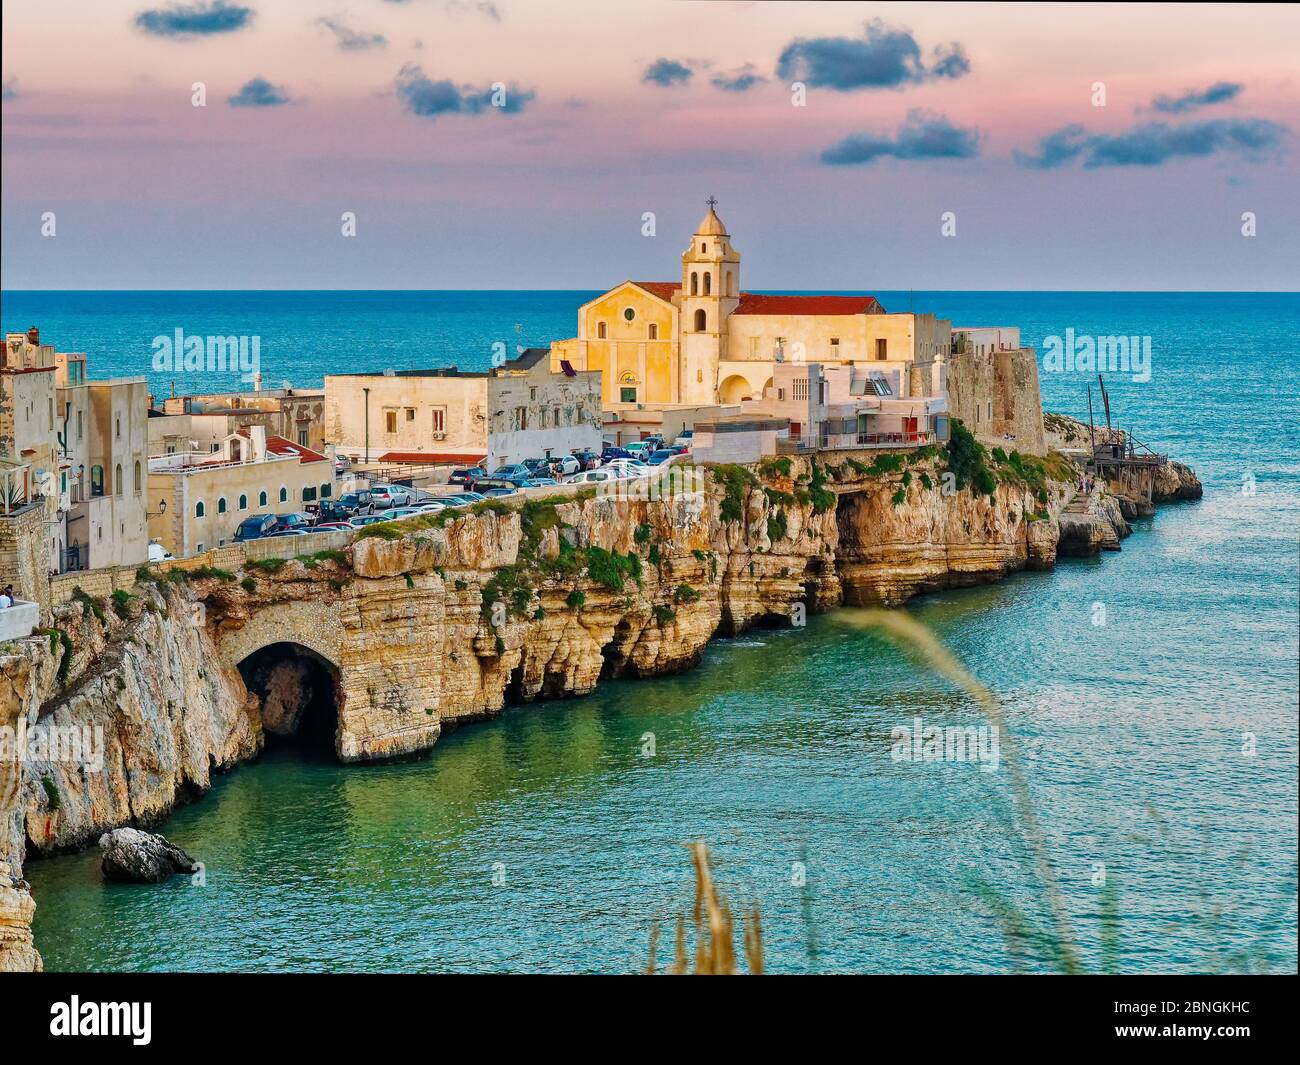 Panoramablick auf die kleine Stadt Vieste im Sommer in Apulien Süden Italiens Stadtbild von Vieste Küstenstadt in Gargano Nationalpark, Italien, Europa Stockfoto